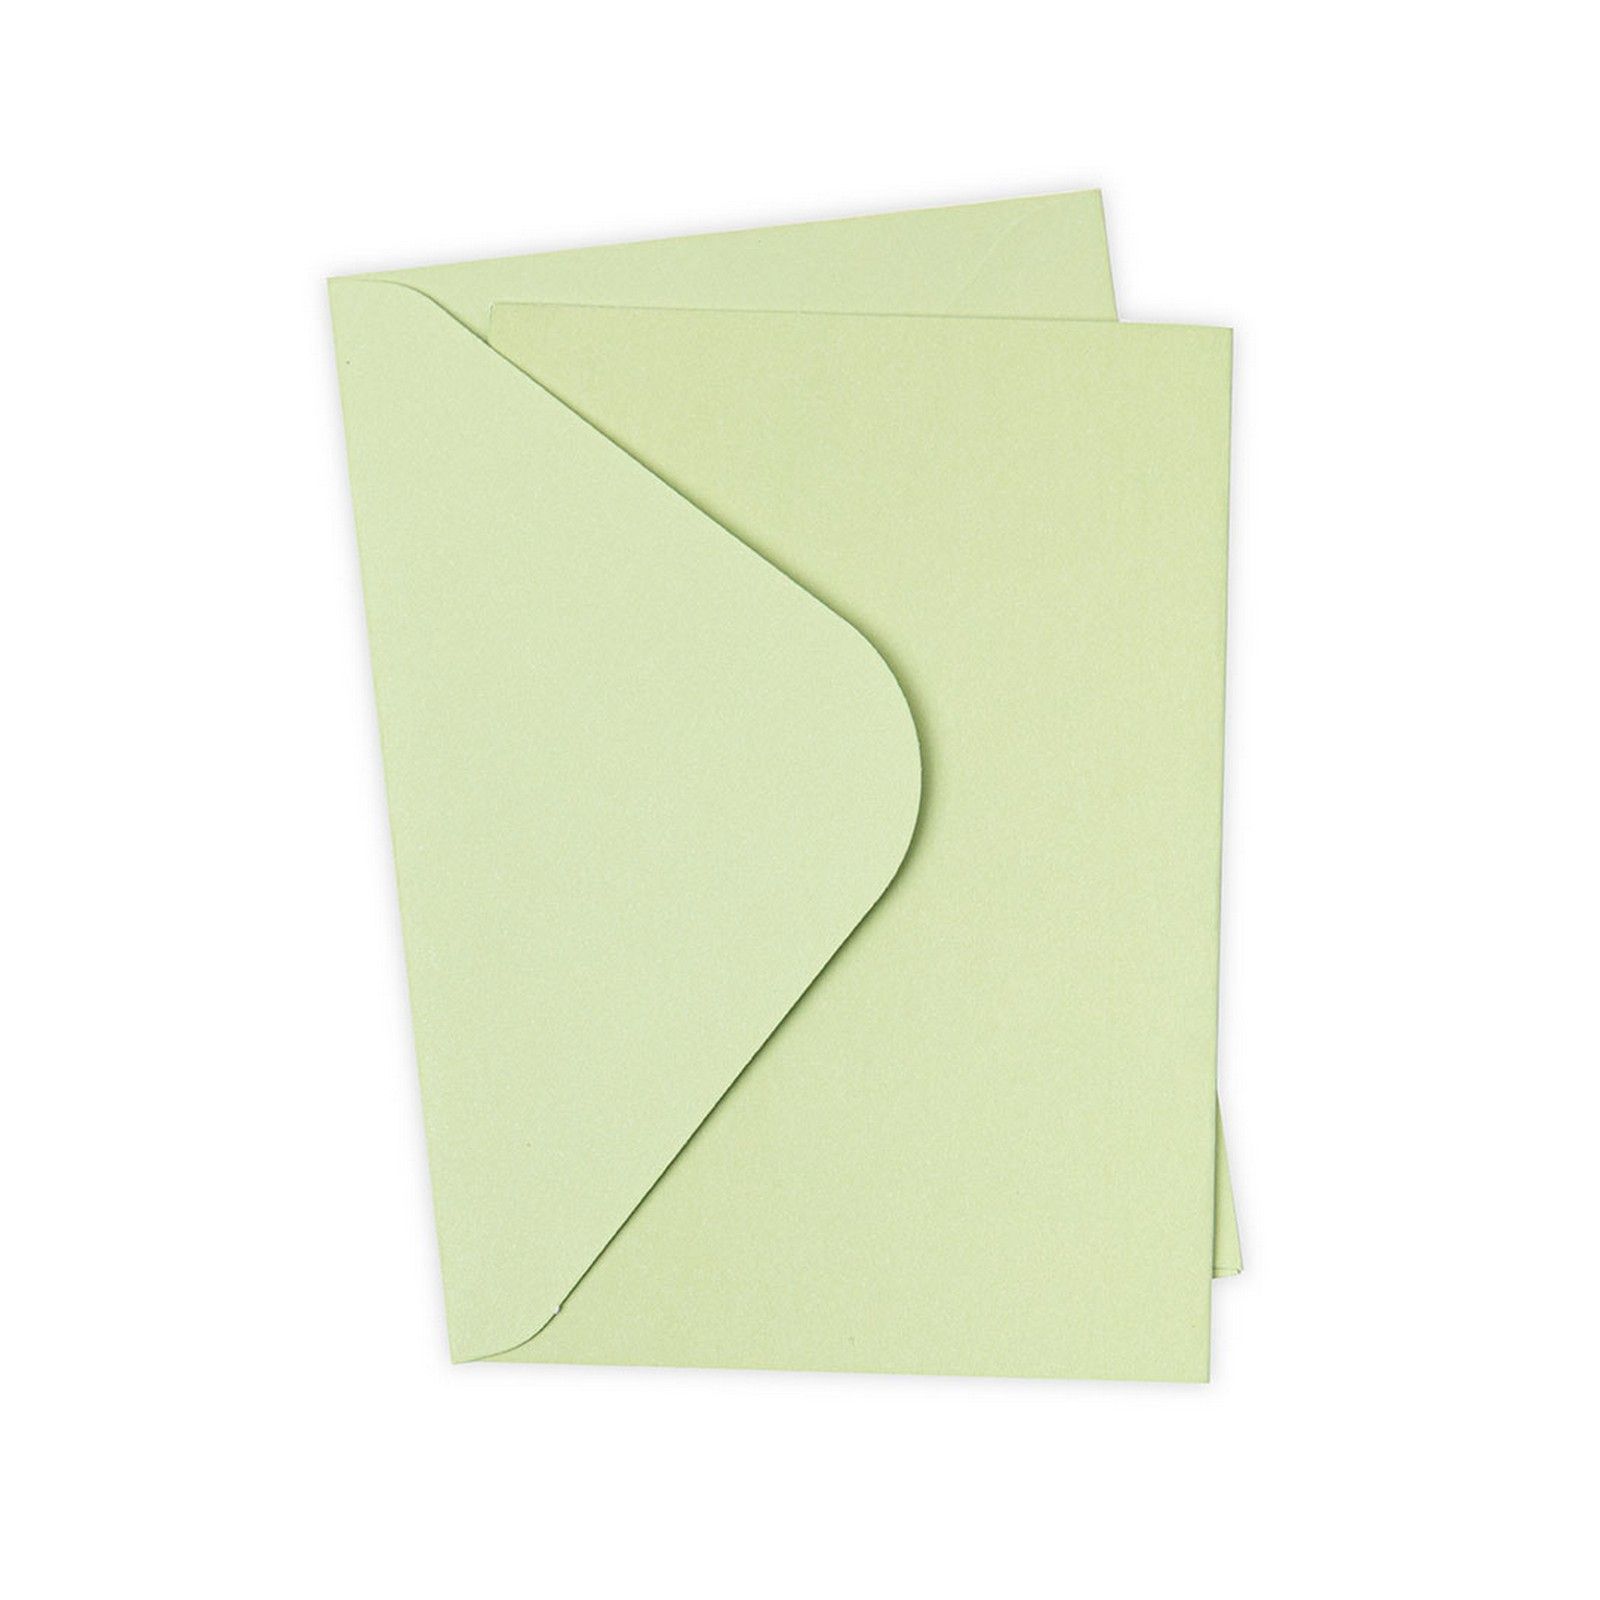 Sizzix • Paquete de tarjetas y sobres Surfacez A6, pera, 10 unidades